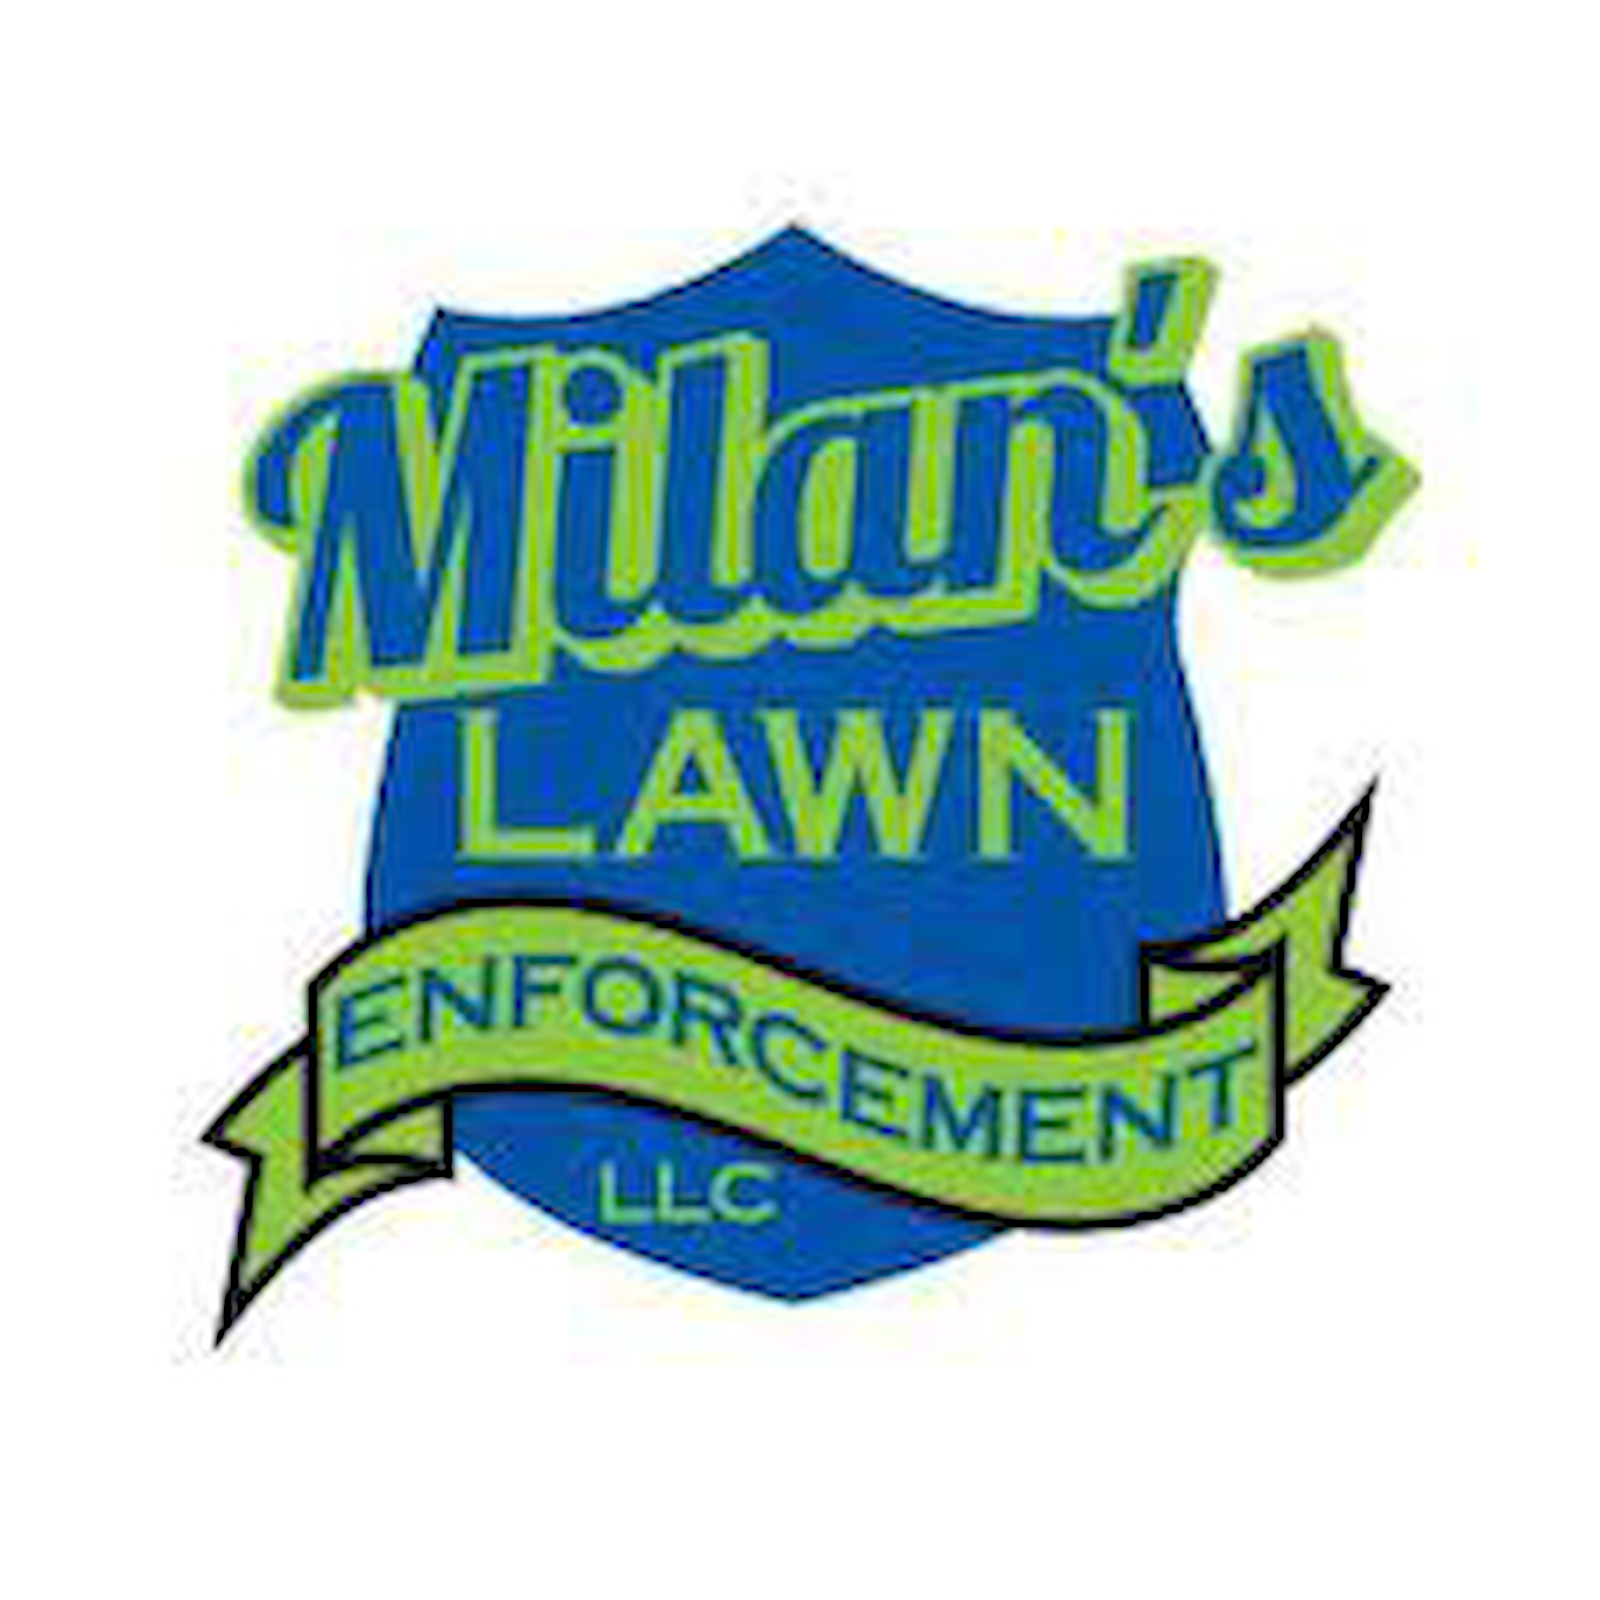 Milan's Lawn Enforcement LLC